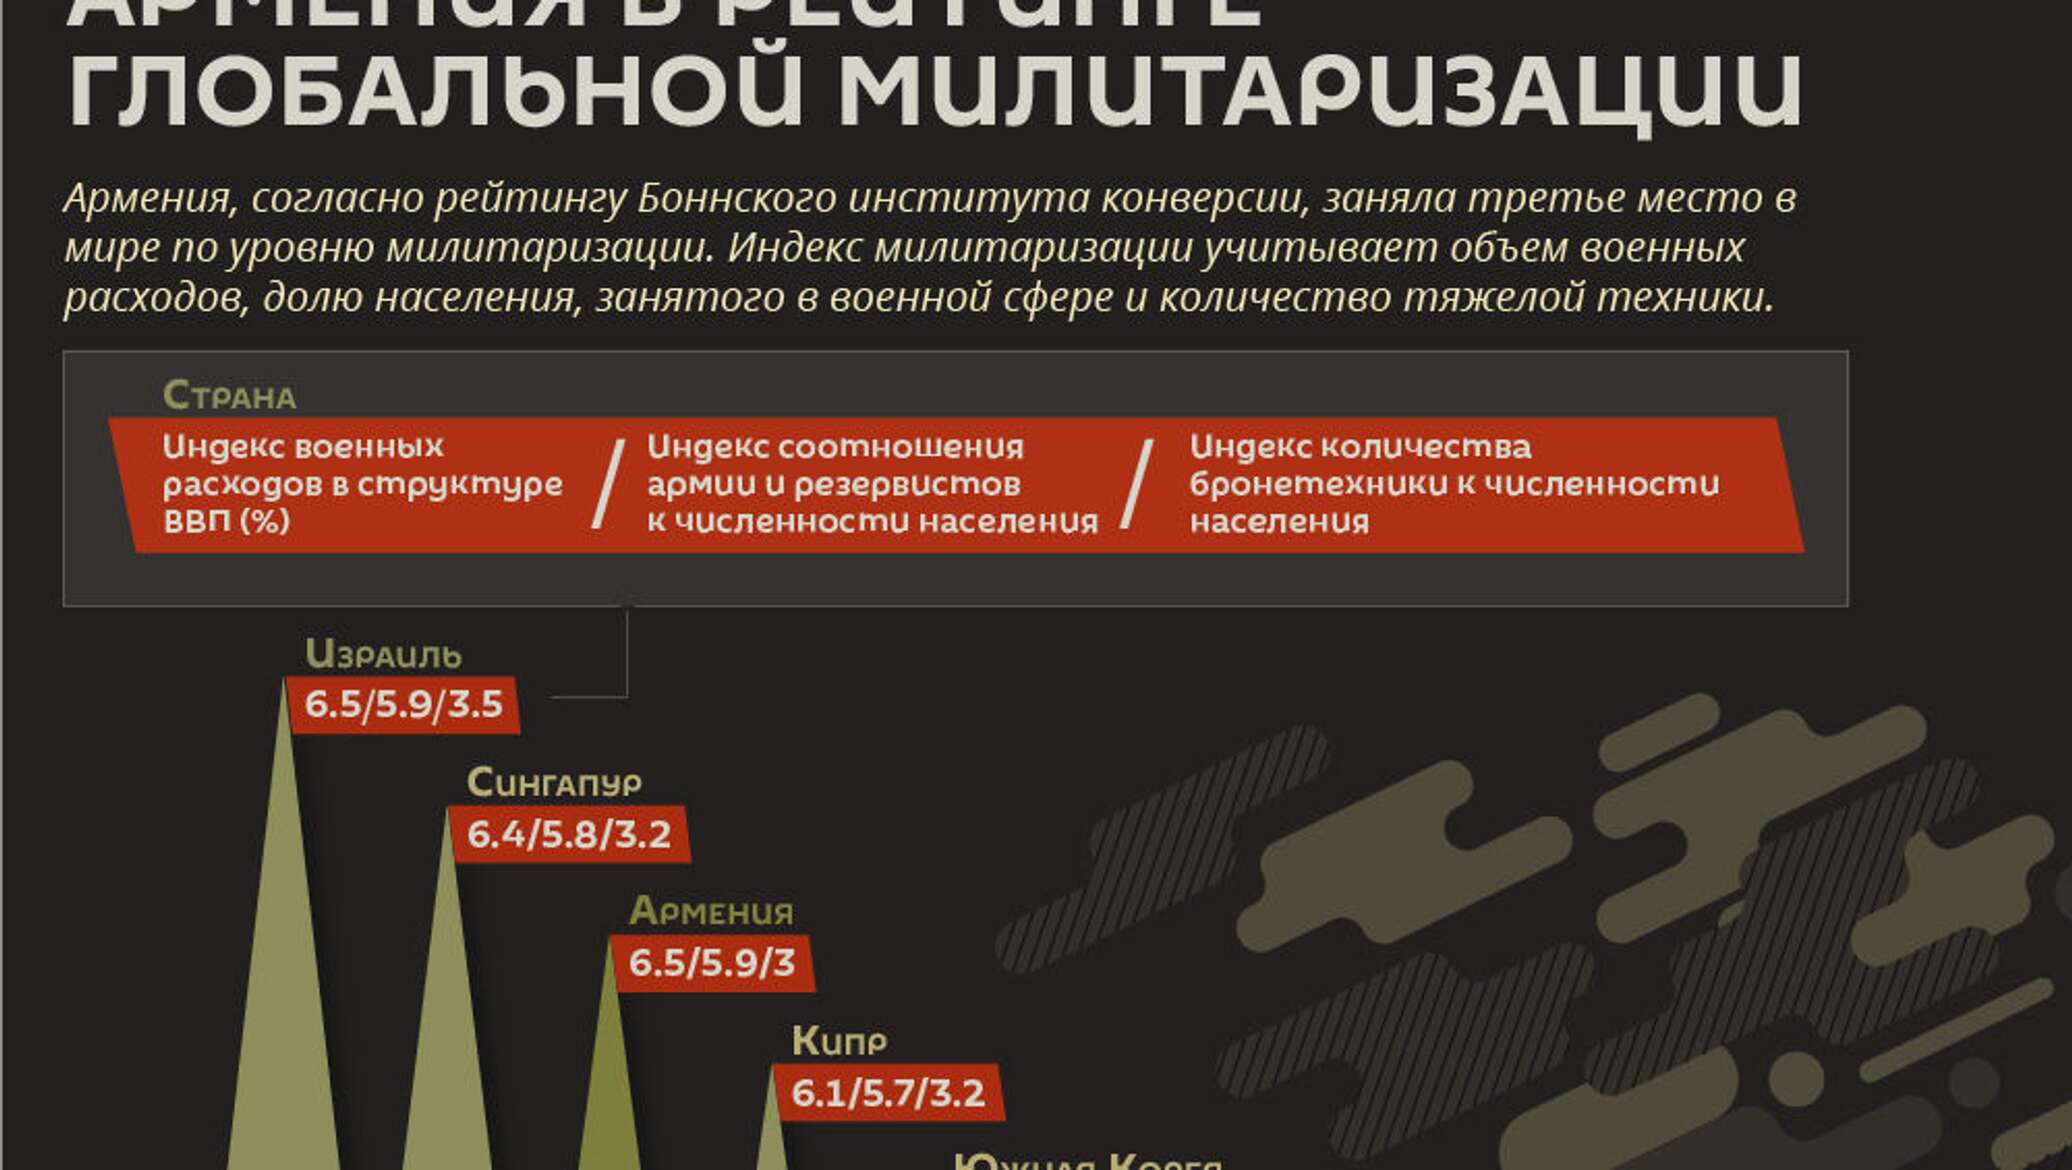 Милитаризация страны. Армения инфографика. Экономика Армении инфографика. Военная безопасность инфографика 2020.